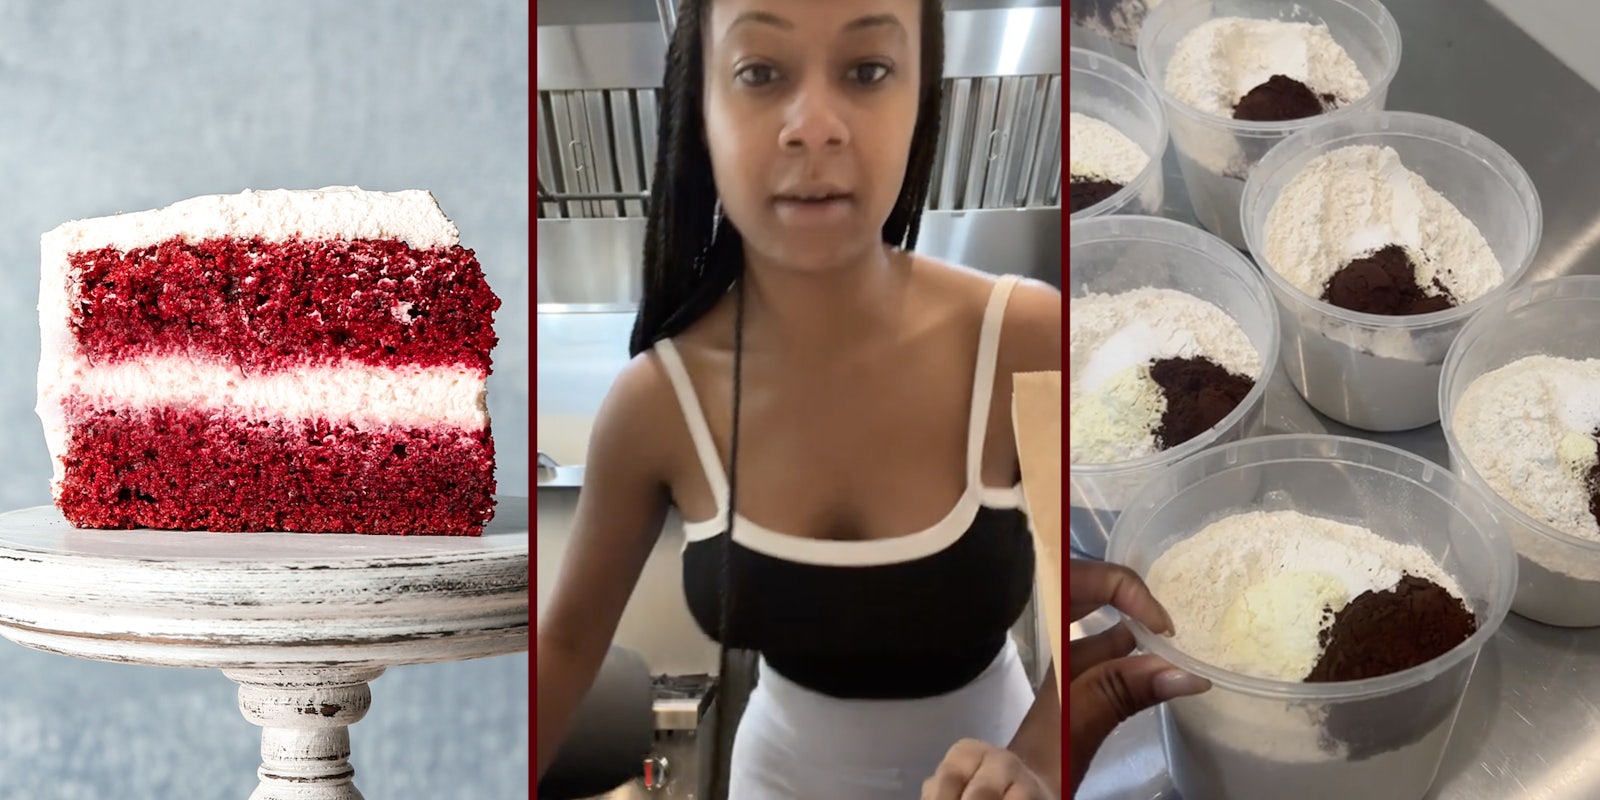 Red velvet cake(l), Woman talking(c), Red velvet mix(r)